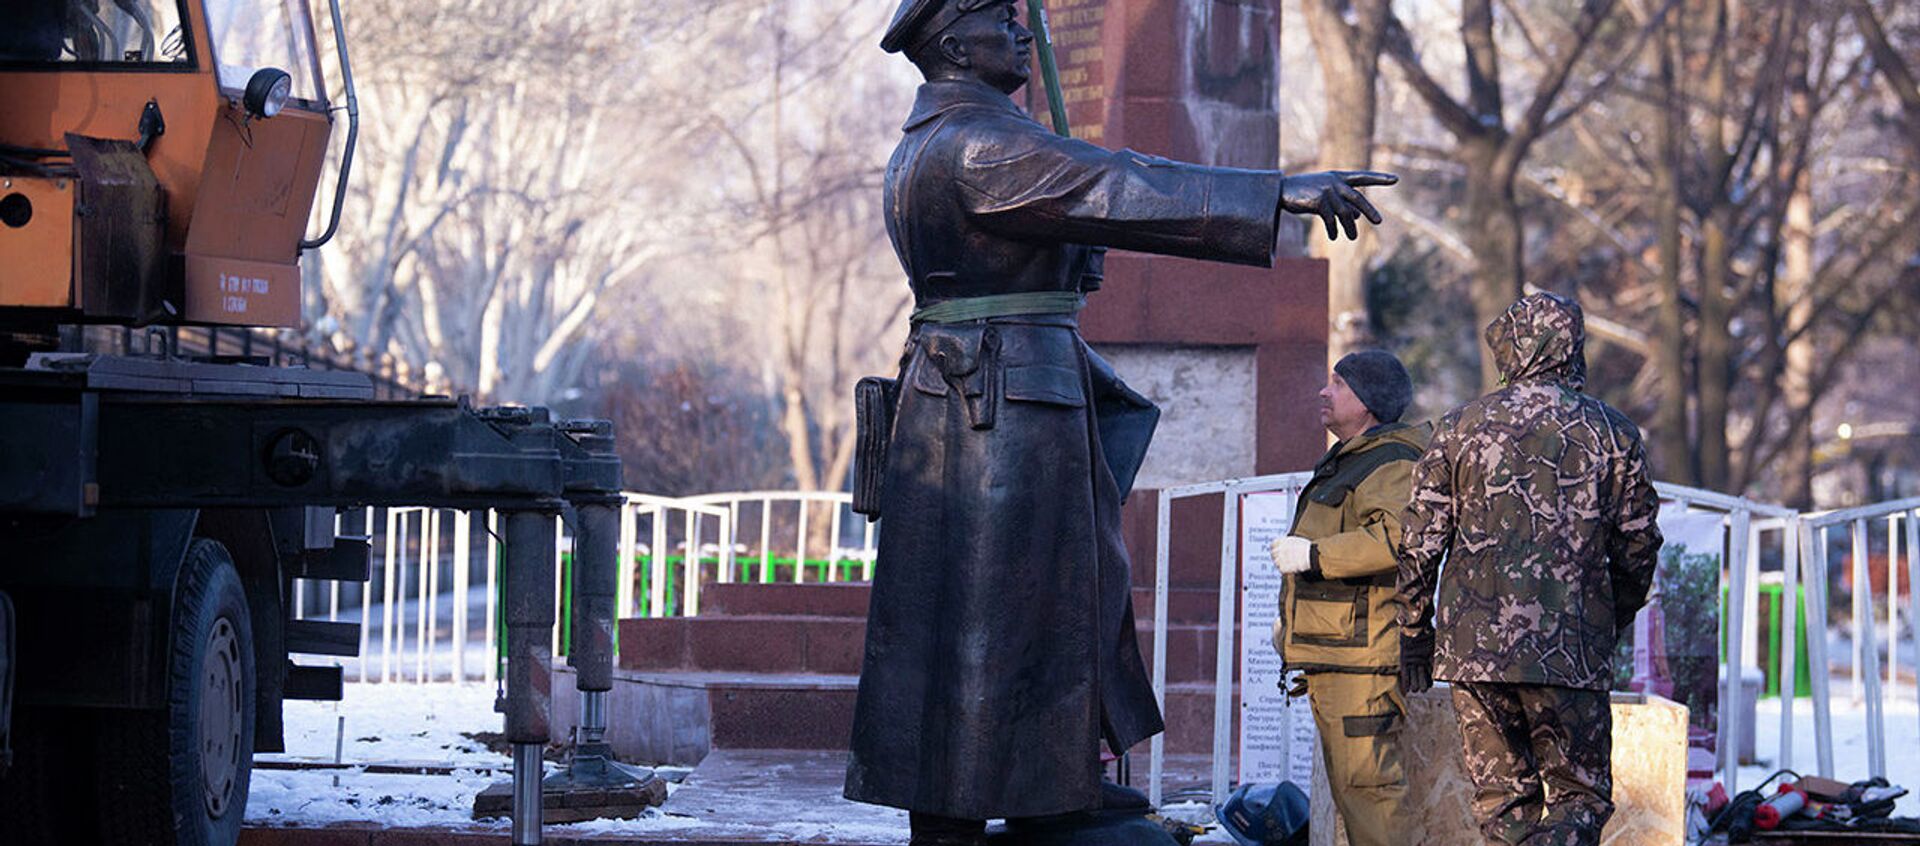 В Бишкеке заменили памятник легендарному полководцу Панфилову — видео - Sputnik Кыргызстан, 1920, 28.11.2021